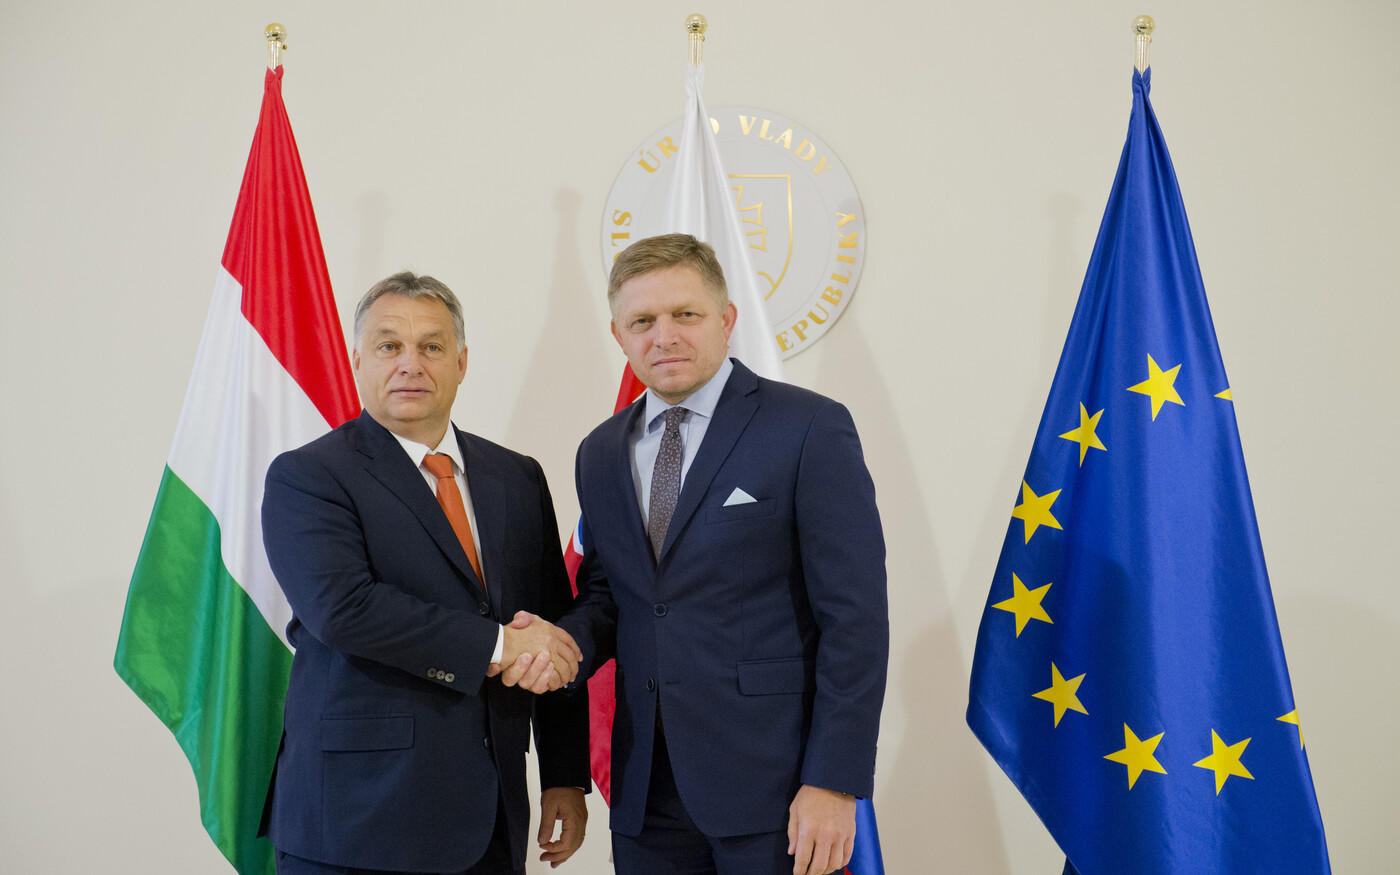 Ficó és Orbán erős ölelése el nem homályosíthatja a szemünket